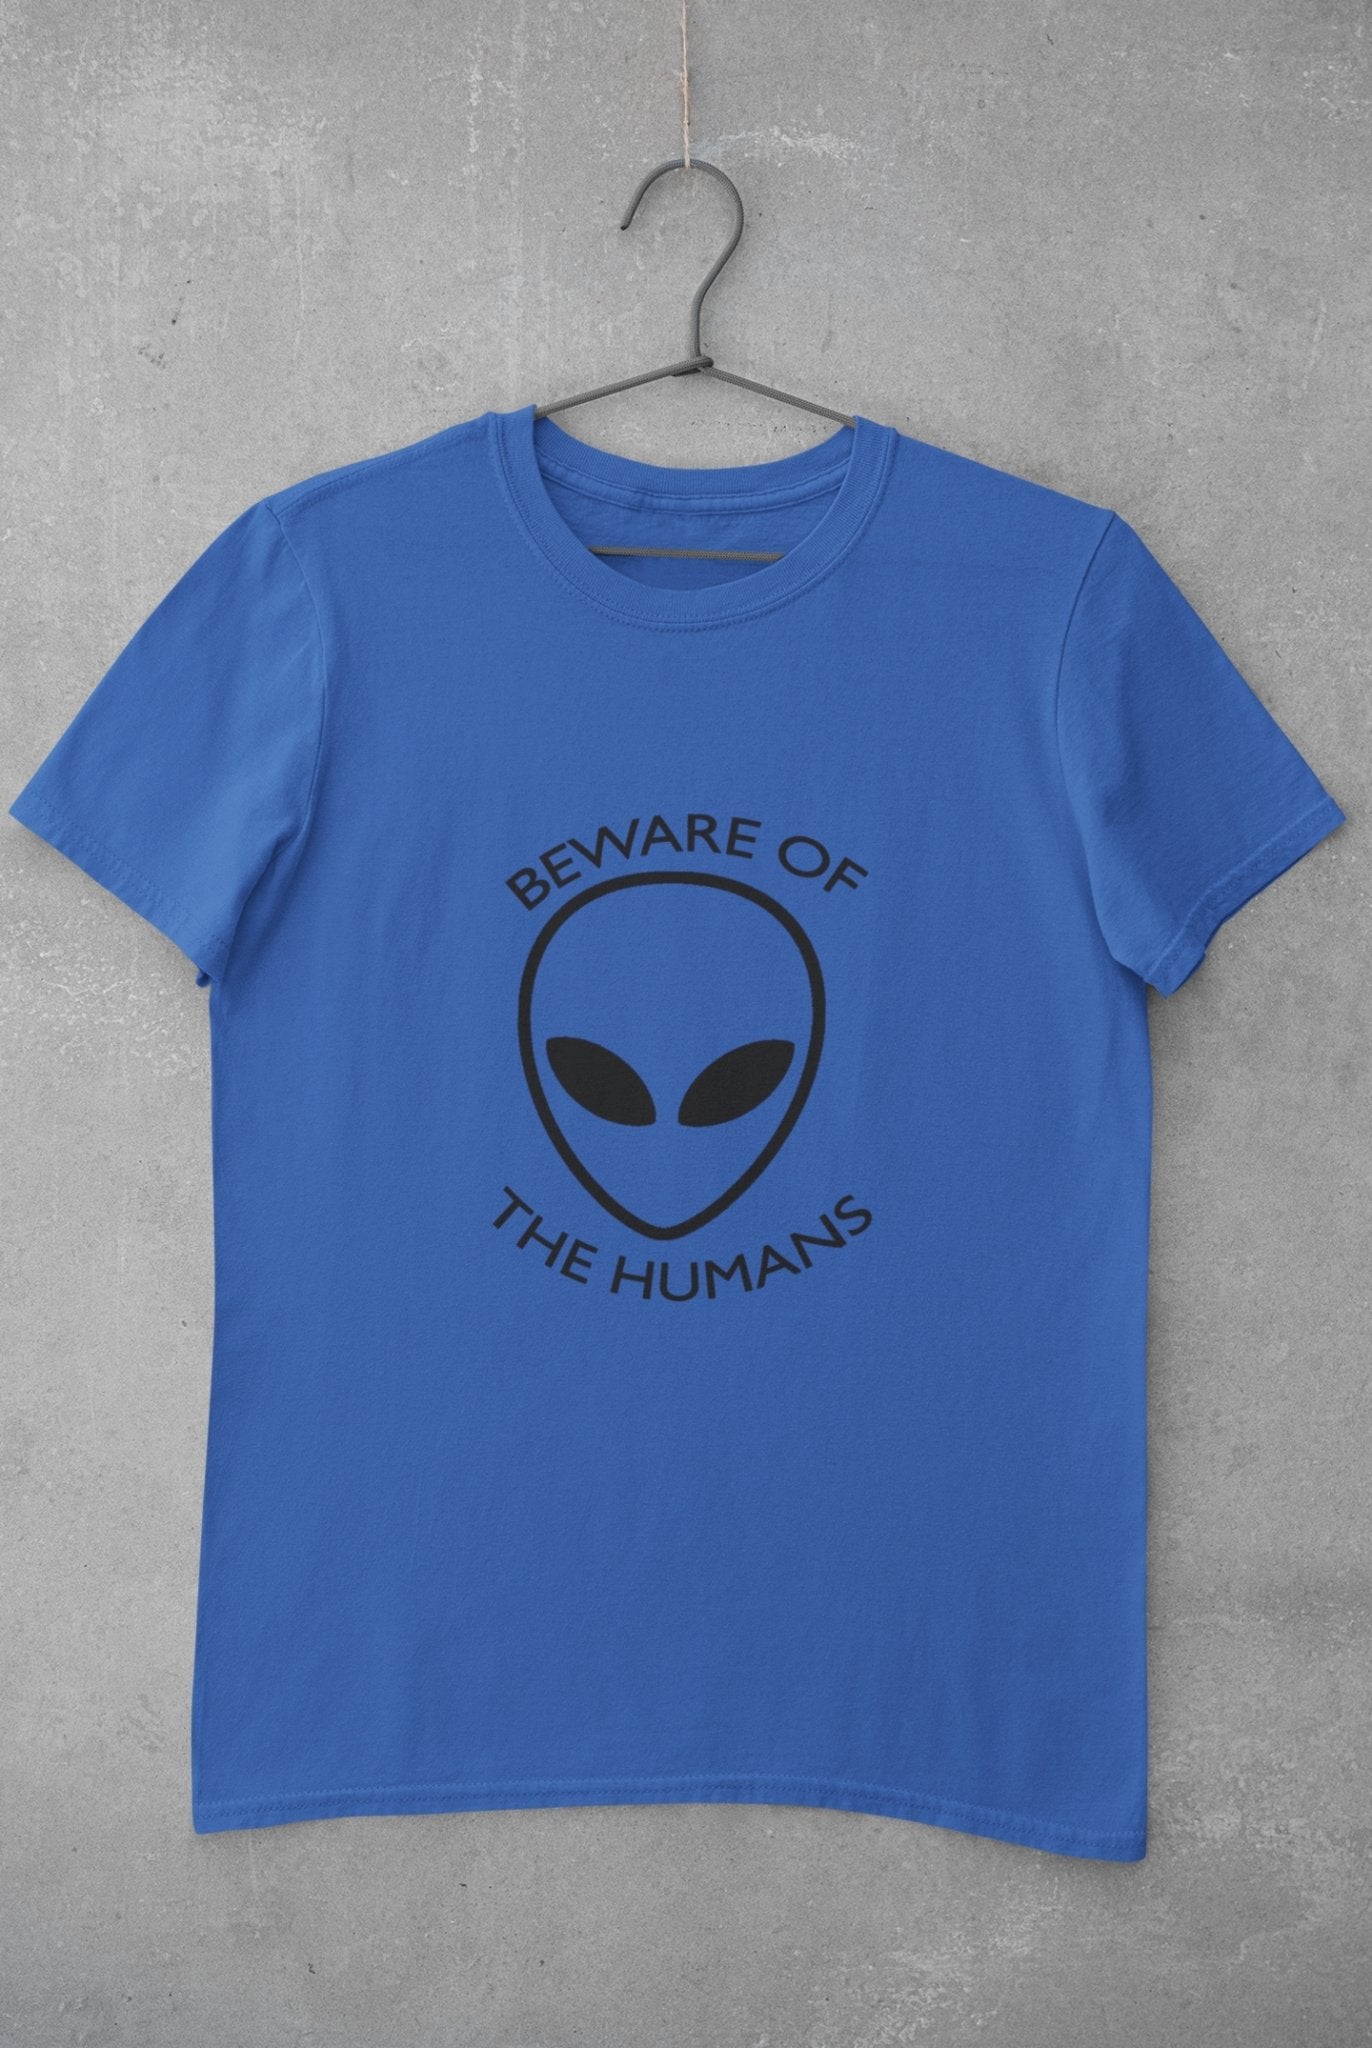 Beware of the Humans Mens Half Sleeves T-shirt- FunkyTeesClub - Funky Tees Club